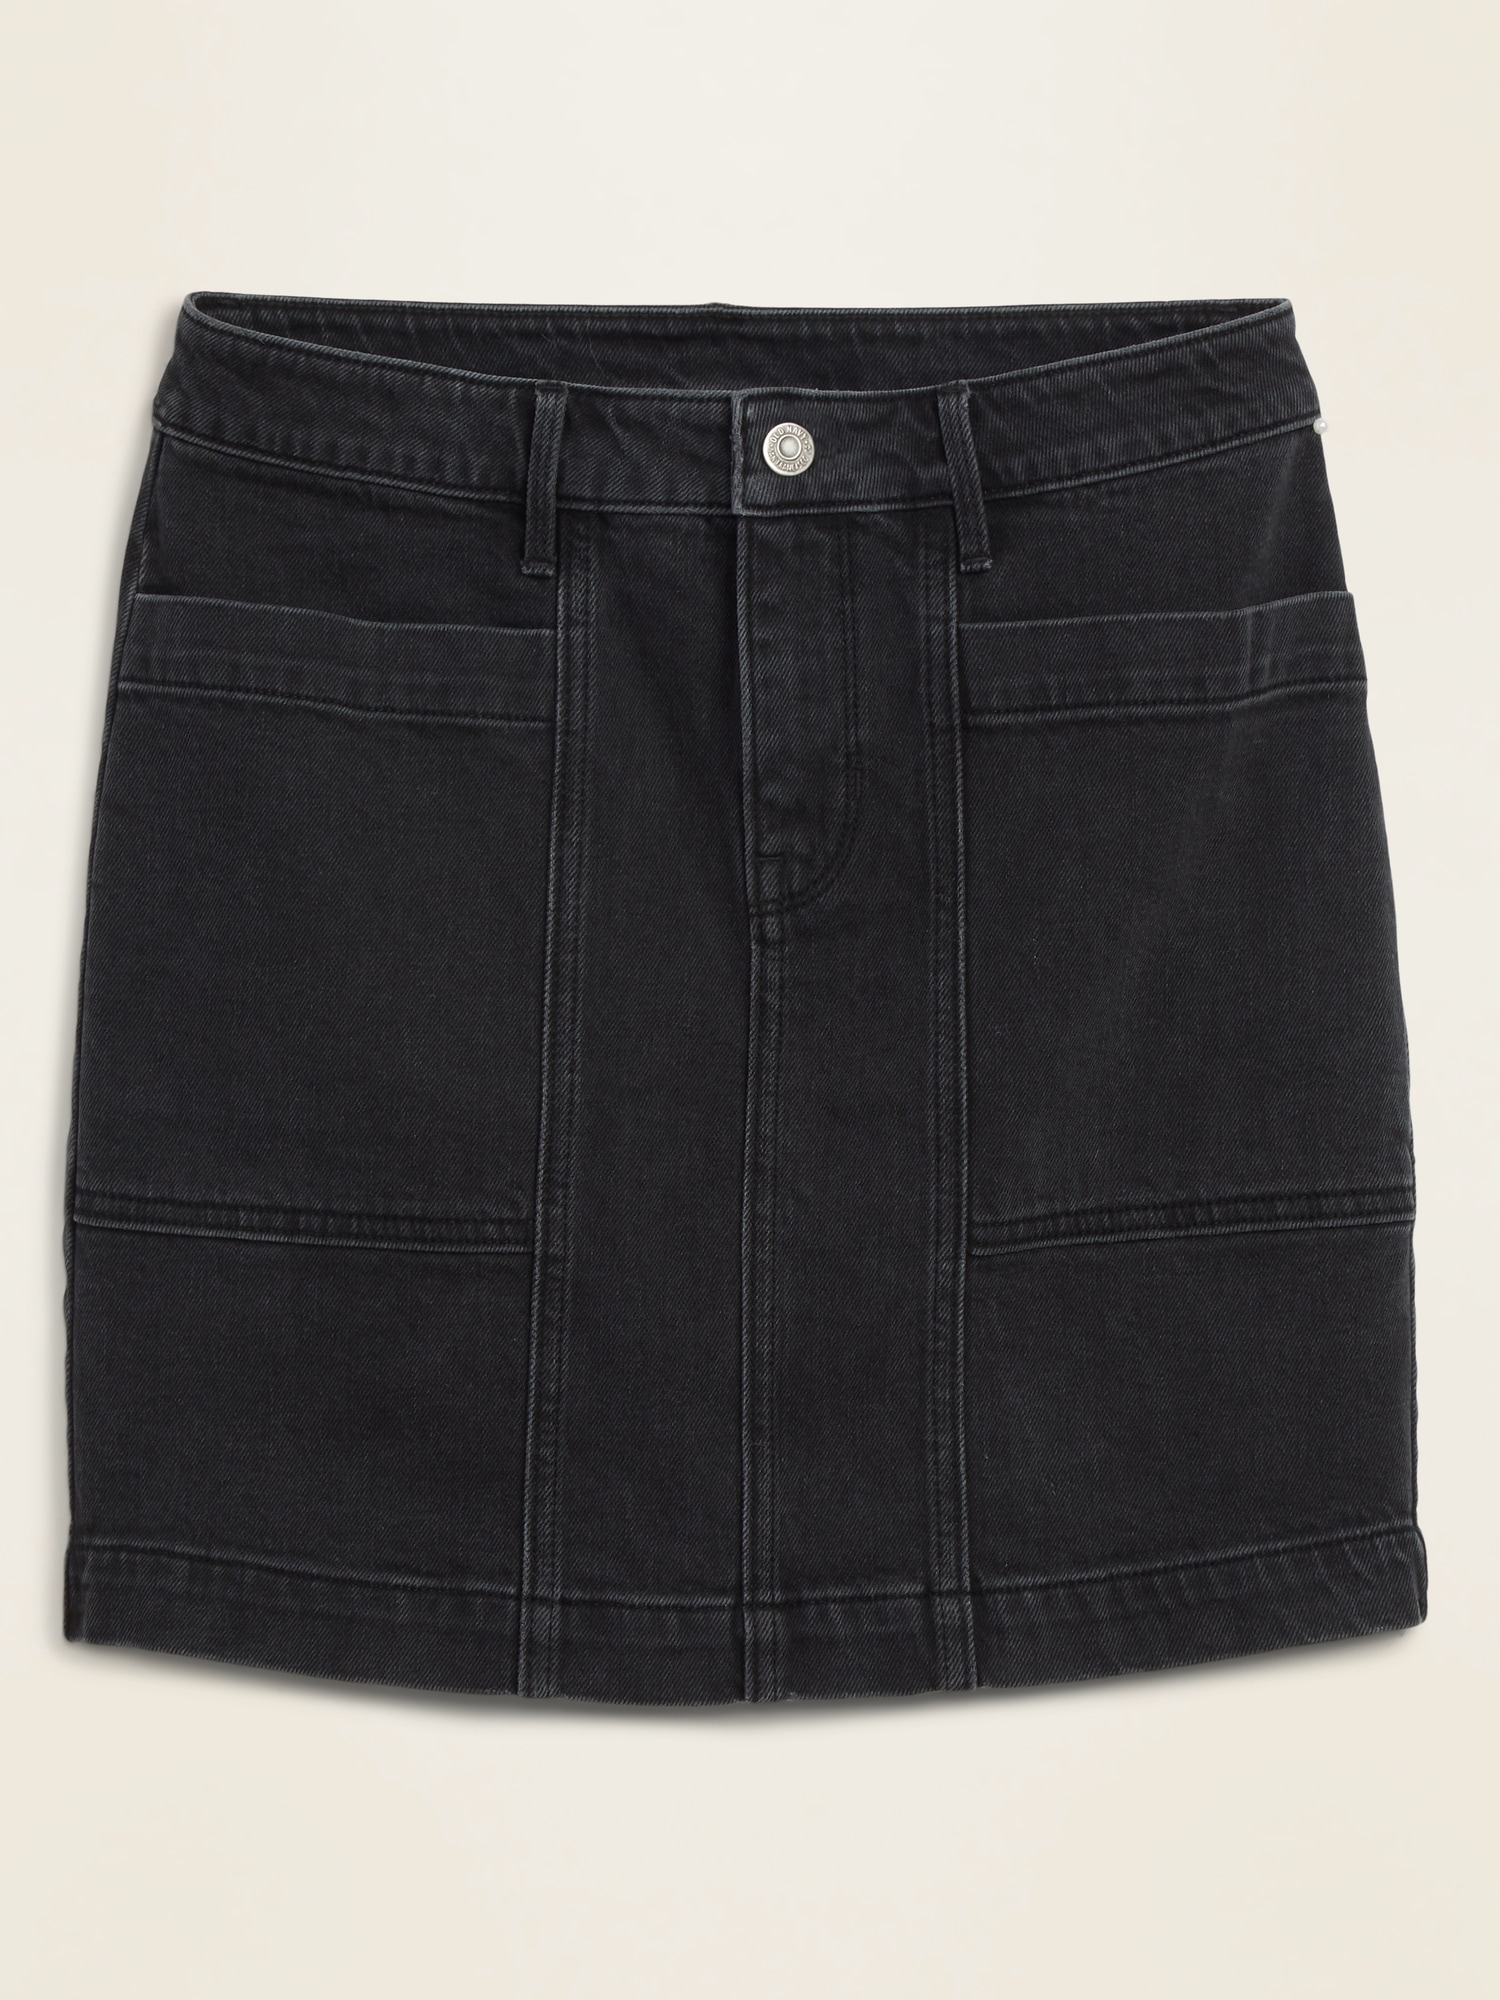 black jeans skirt